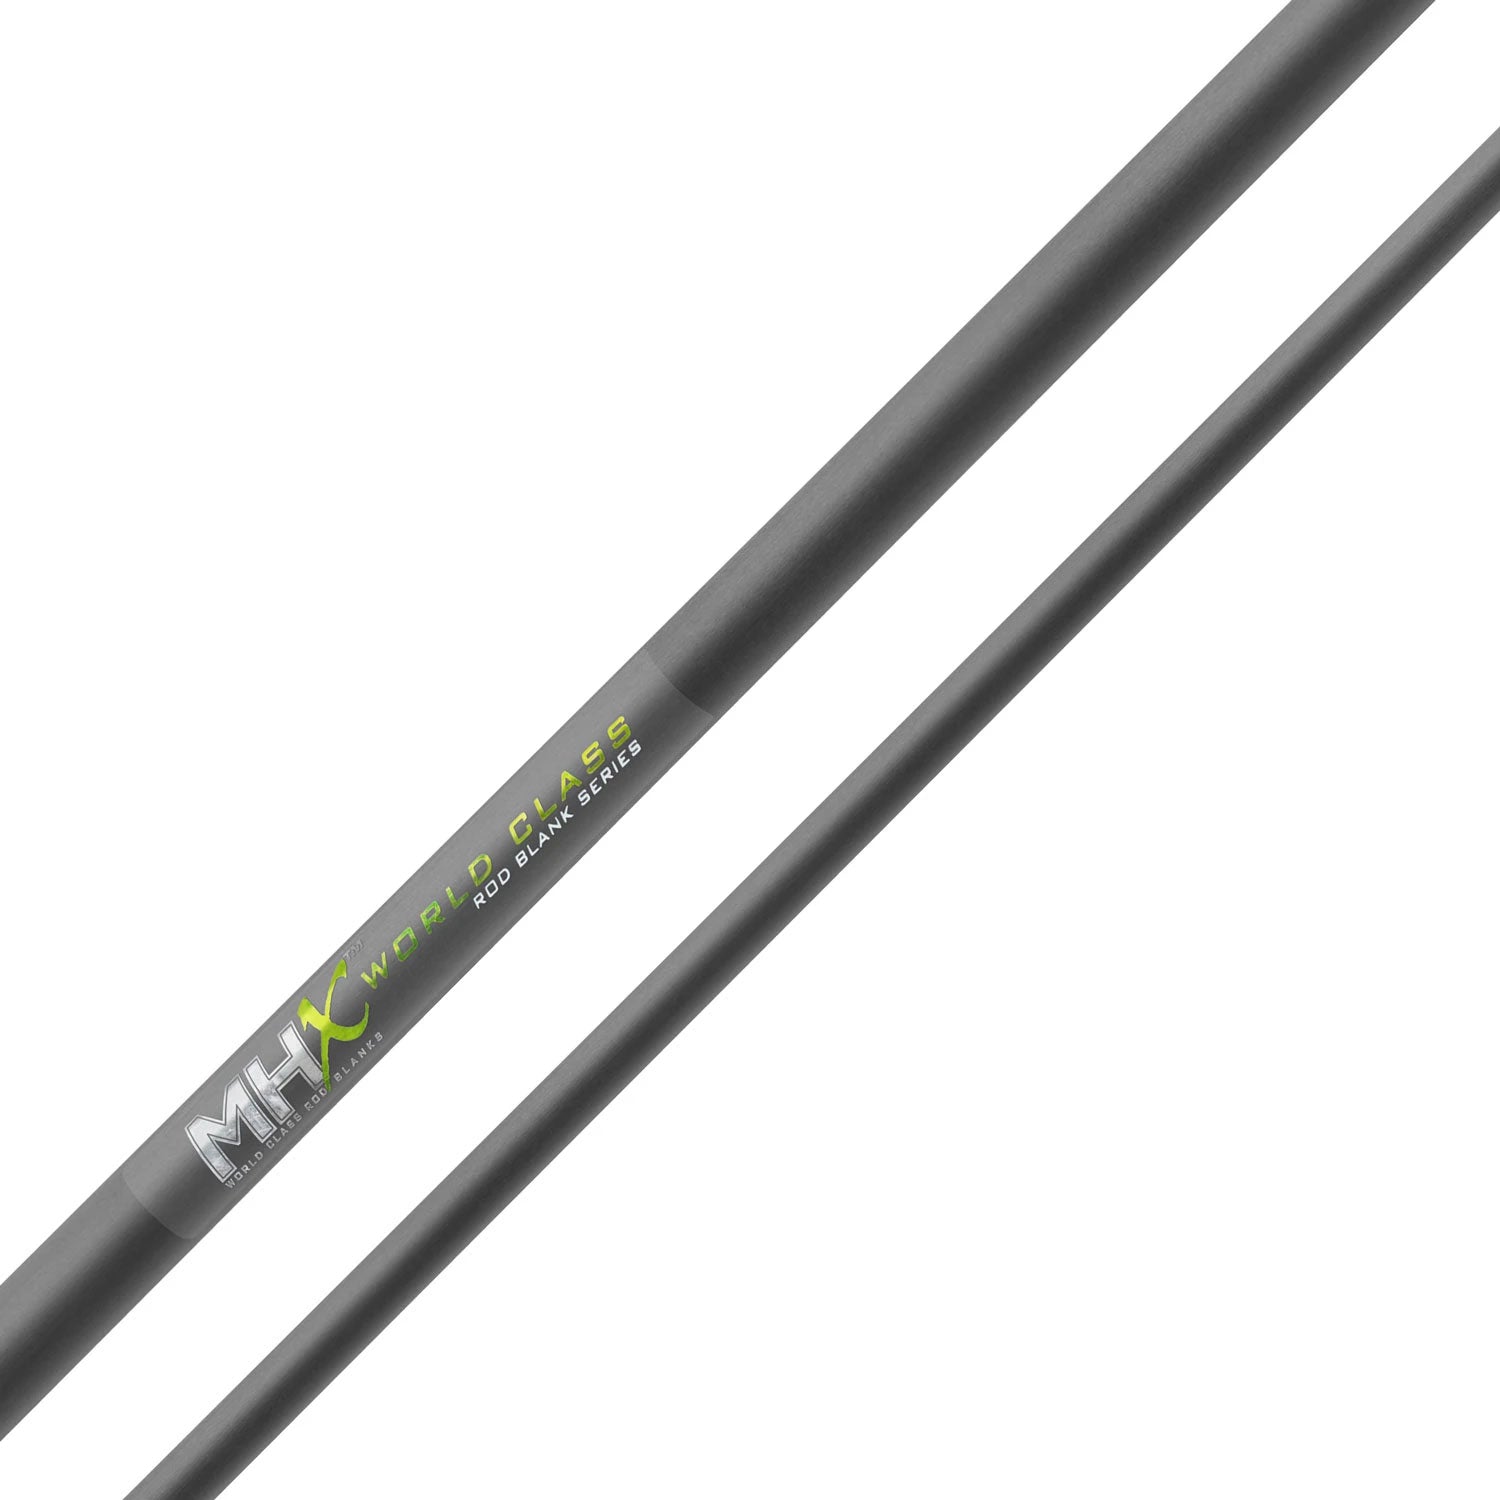 MHX 9'6" Medium Steelhead Rod Blank - ST1143-MHX